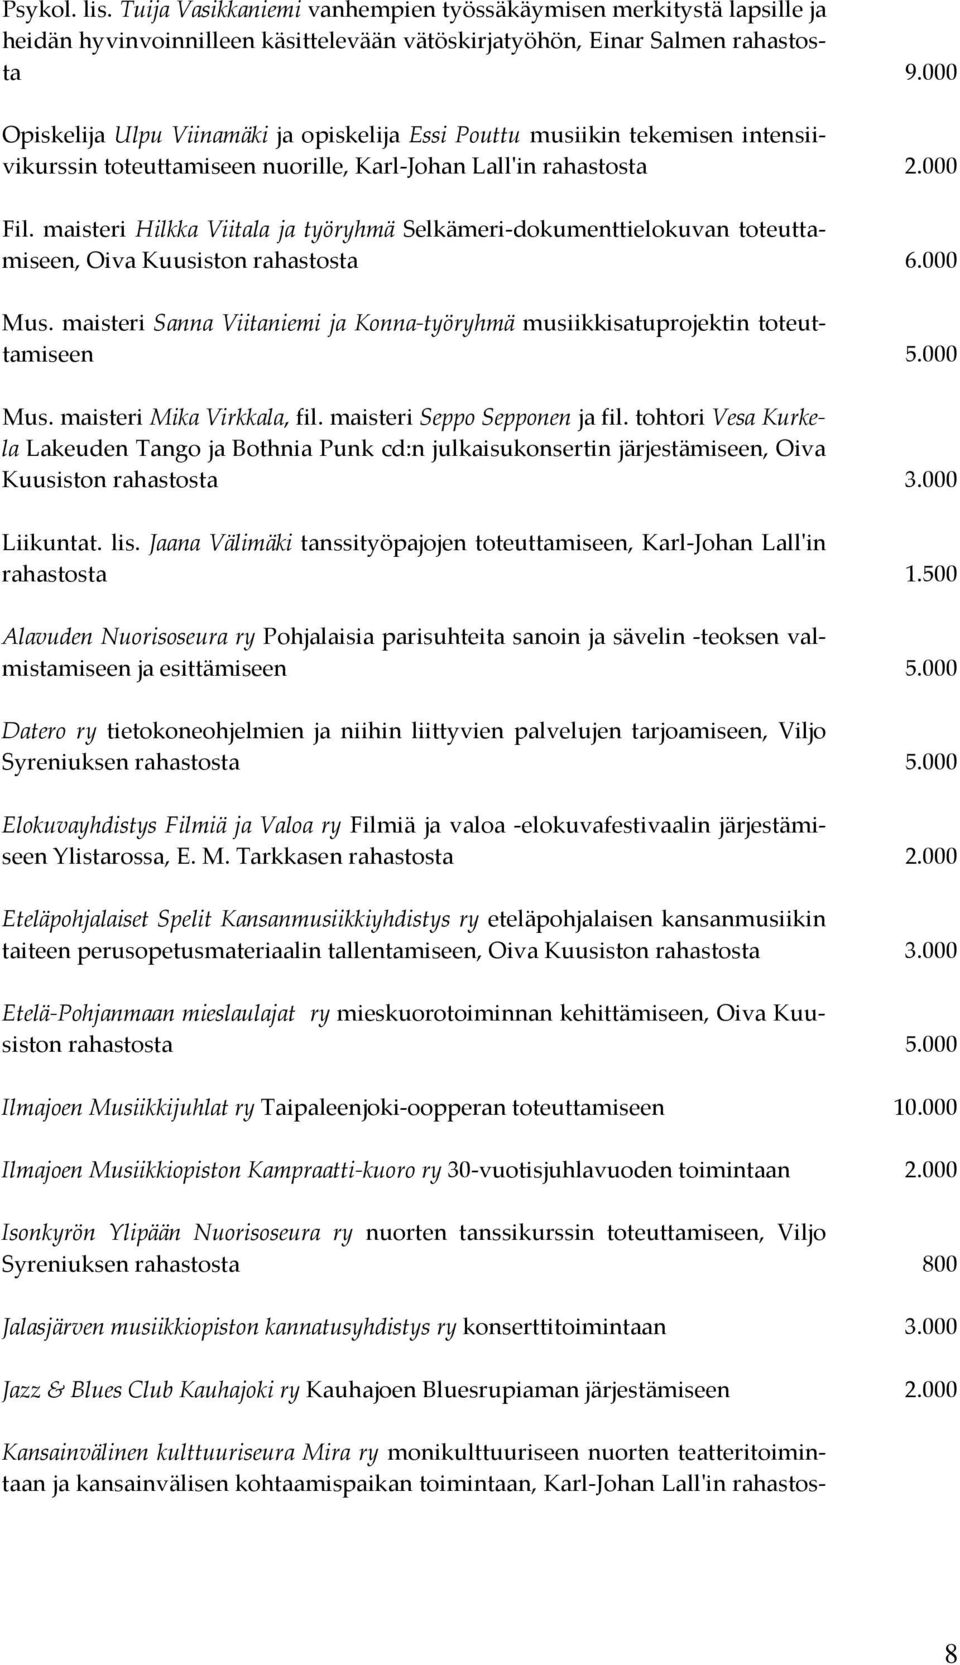 maisteri Hilkka Viitala ja työryhmä Selkämeri-dokumenttielokuvan toteuttamiseen, Oiva Kuusiston rahastosta 6.000 Mus.